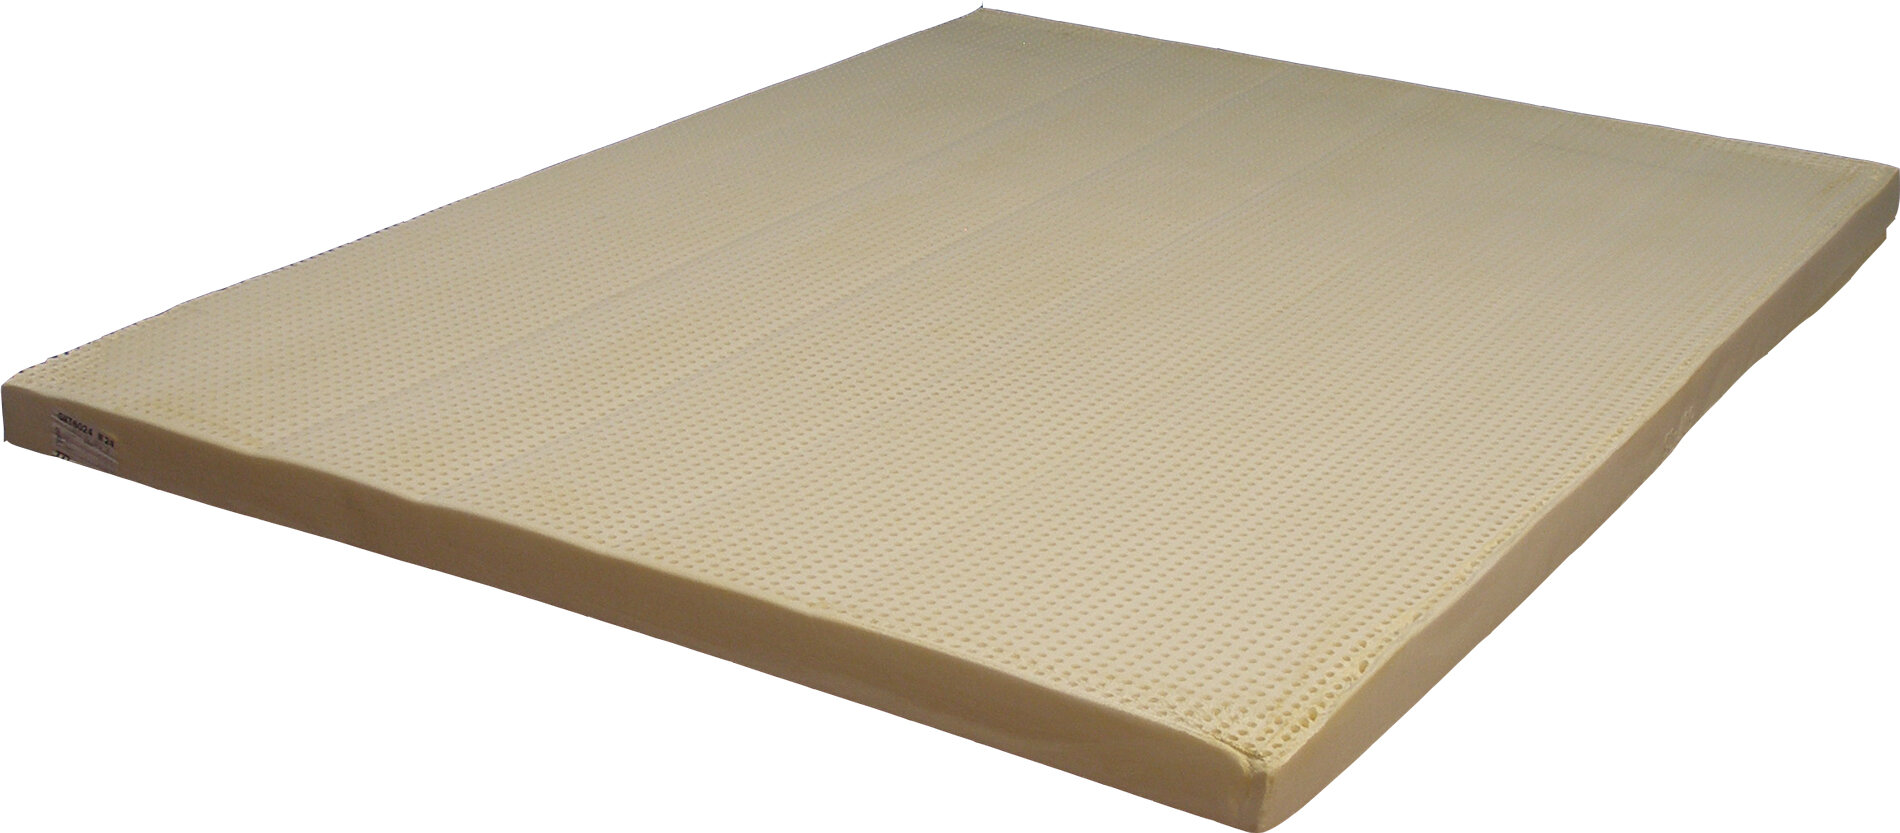 latex foam mattress data sheet